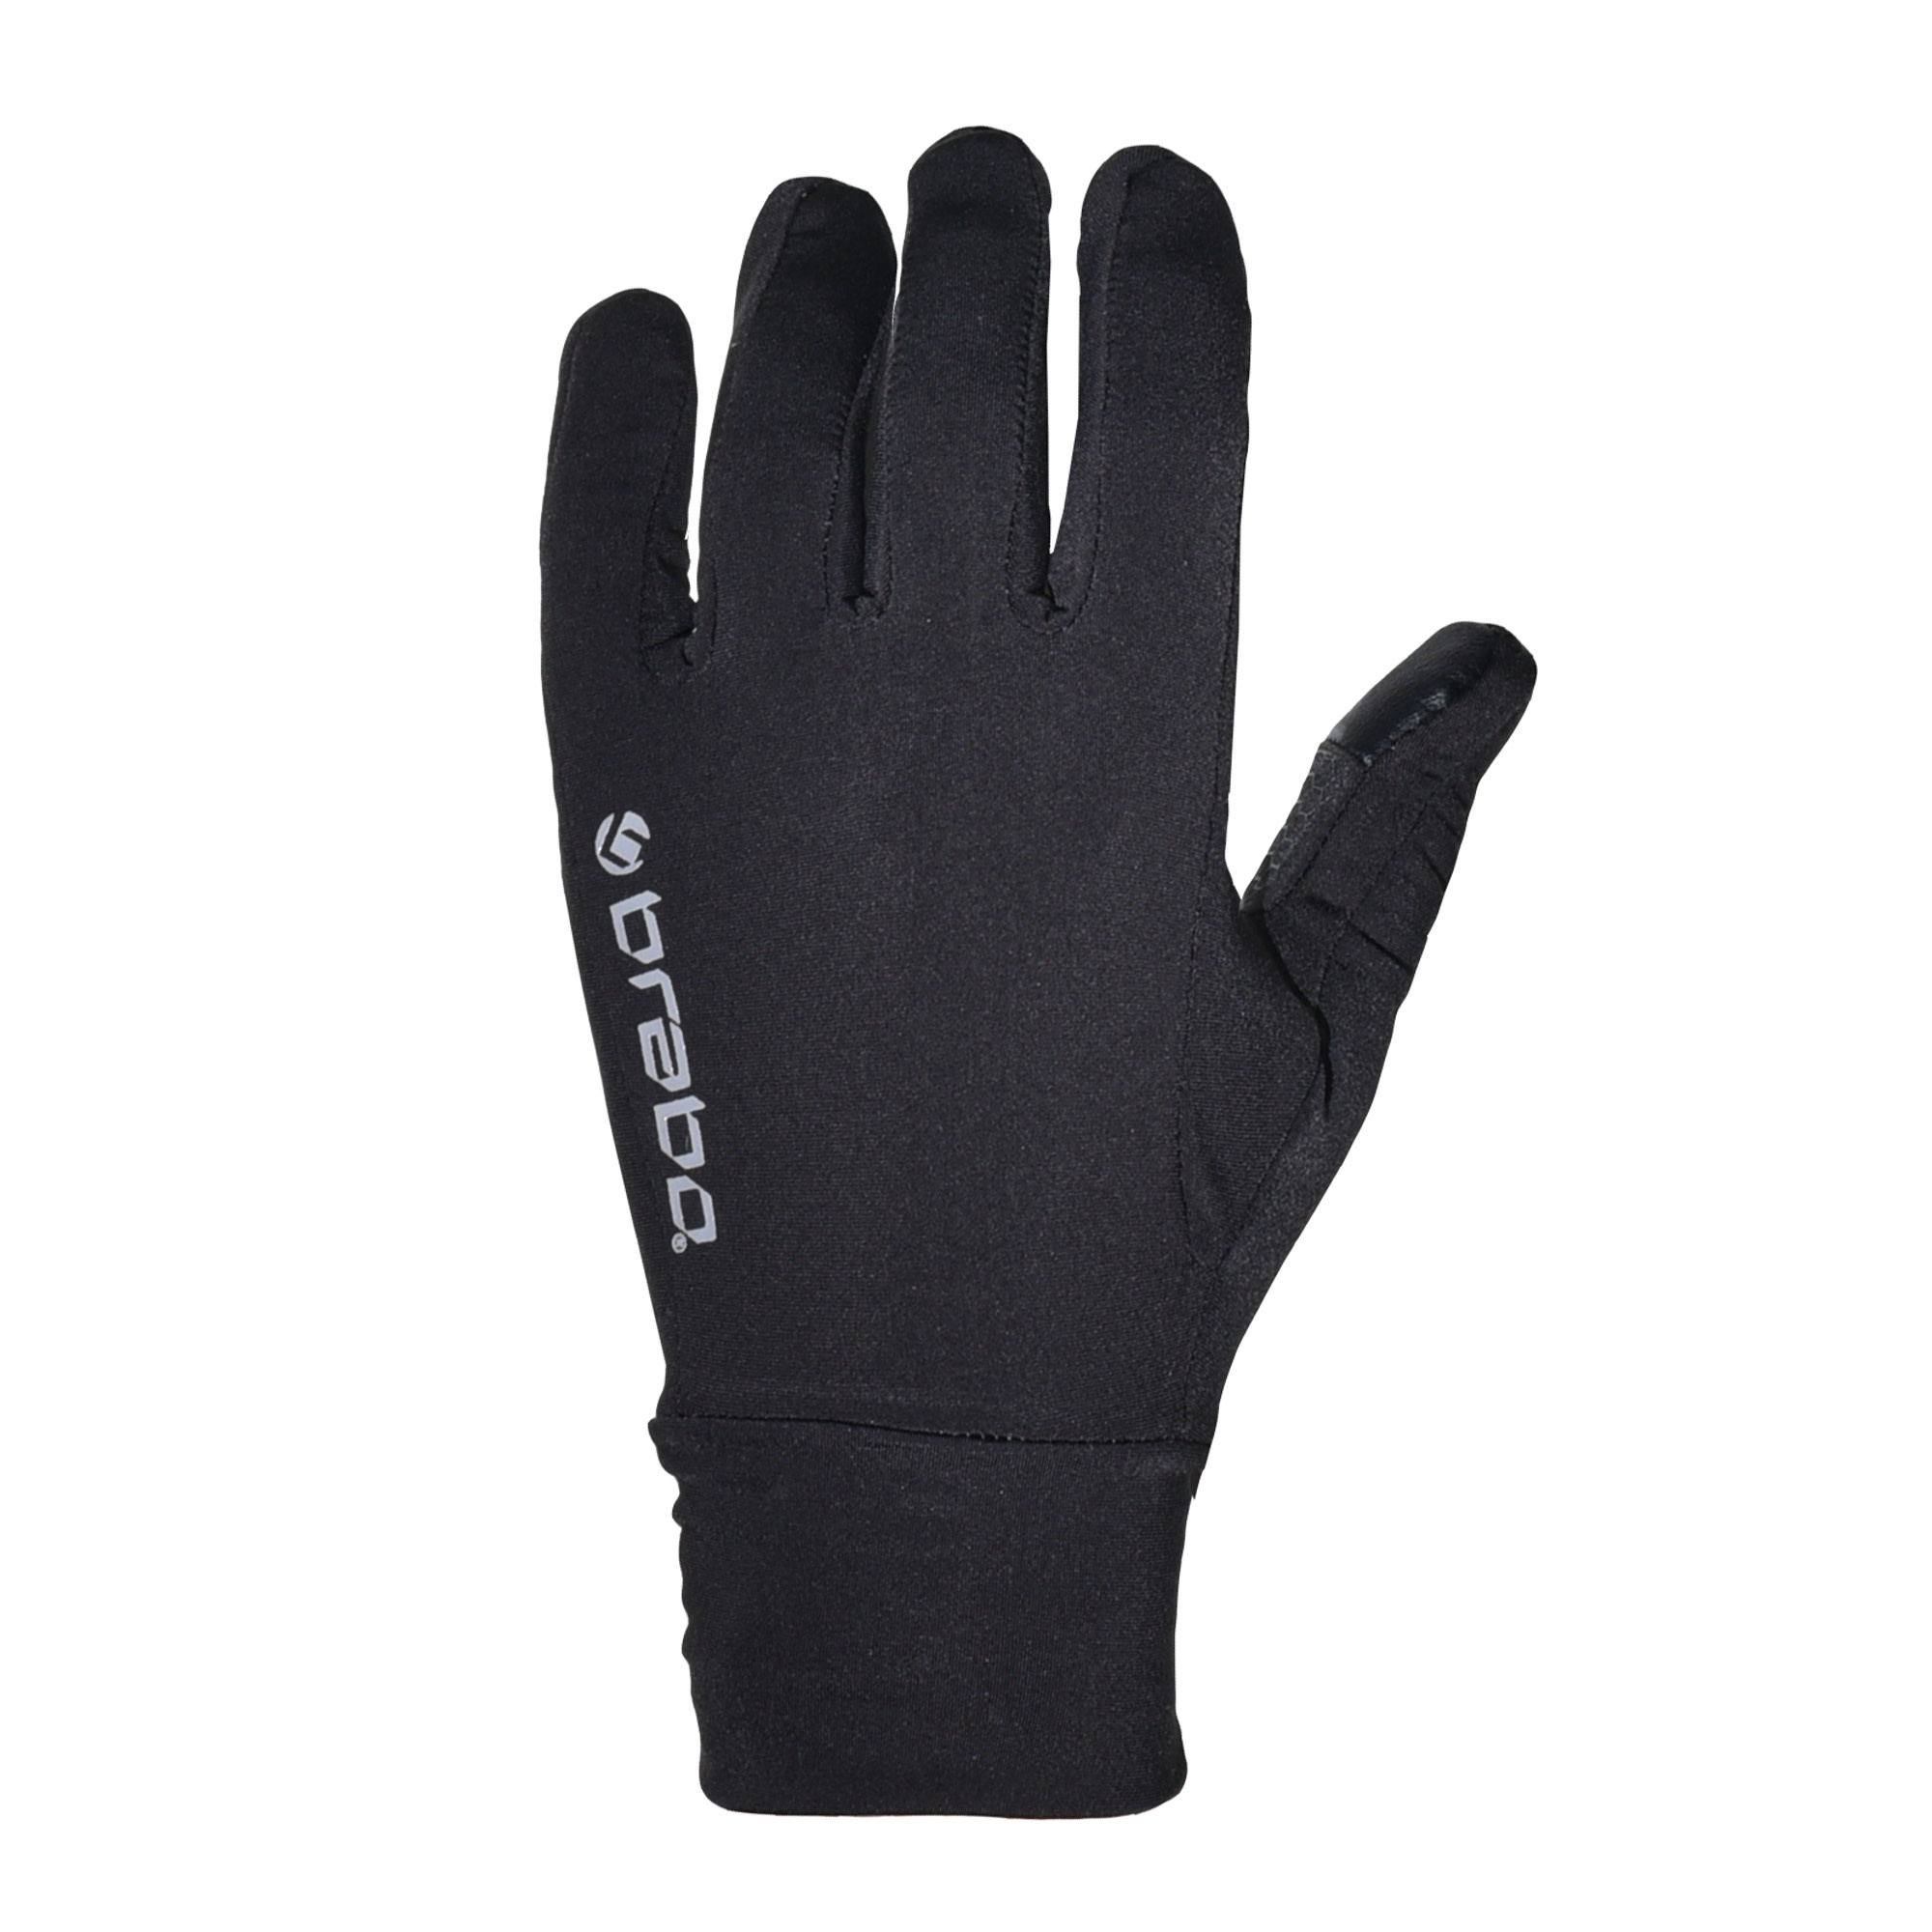 rem Lenen kroeg Brabo Tech Gloves Pair Black - Hockeypoint